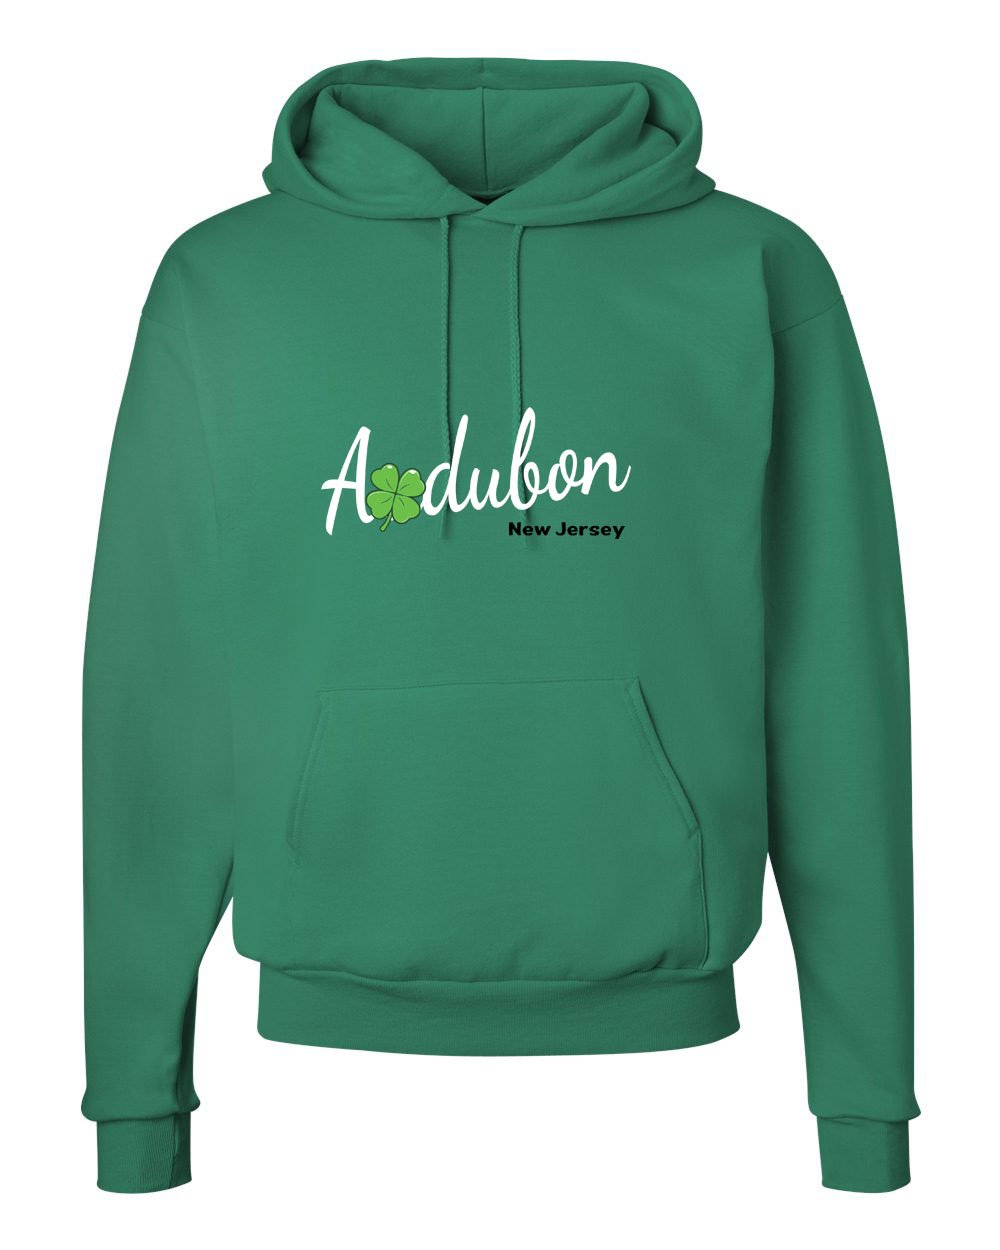 Irish Audubon Hoodie